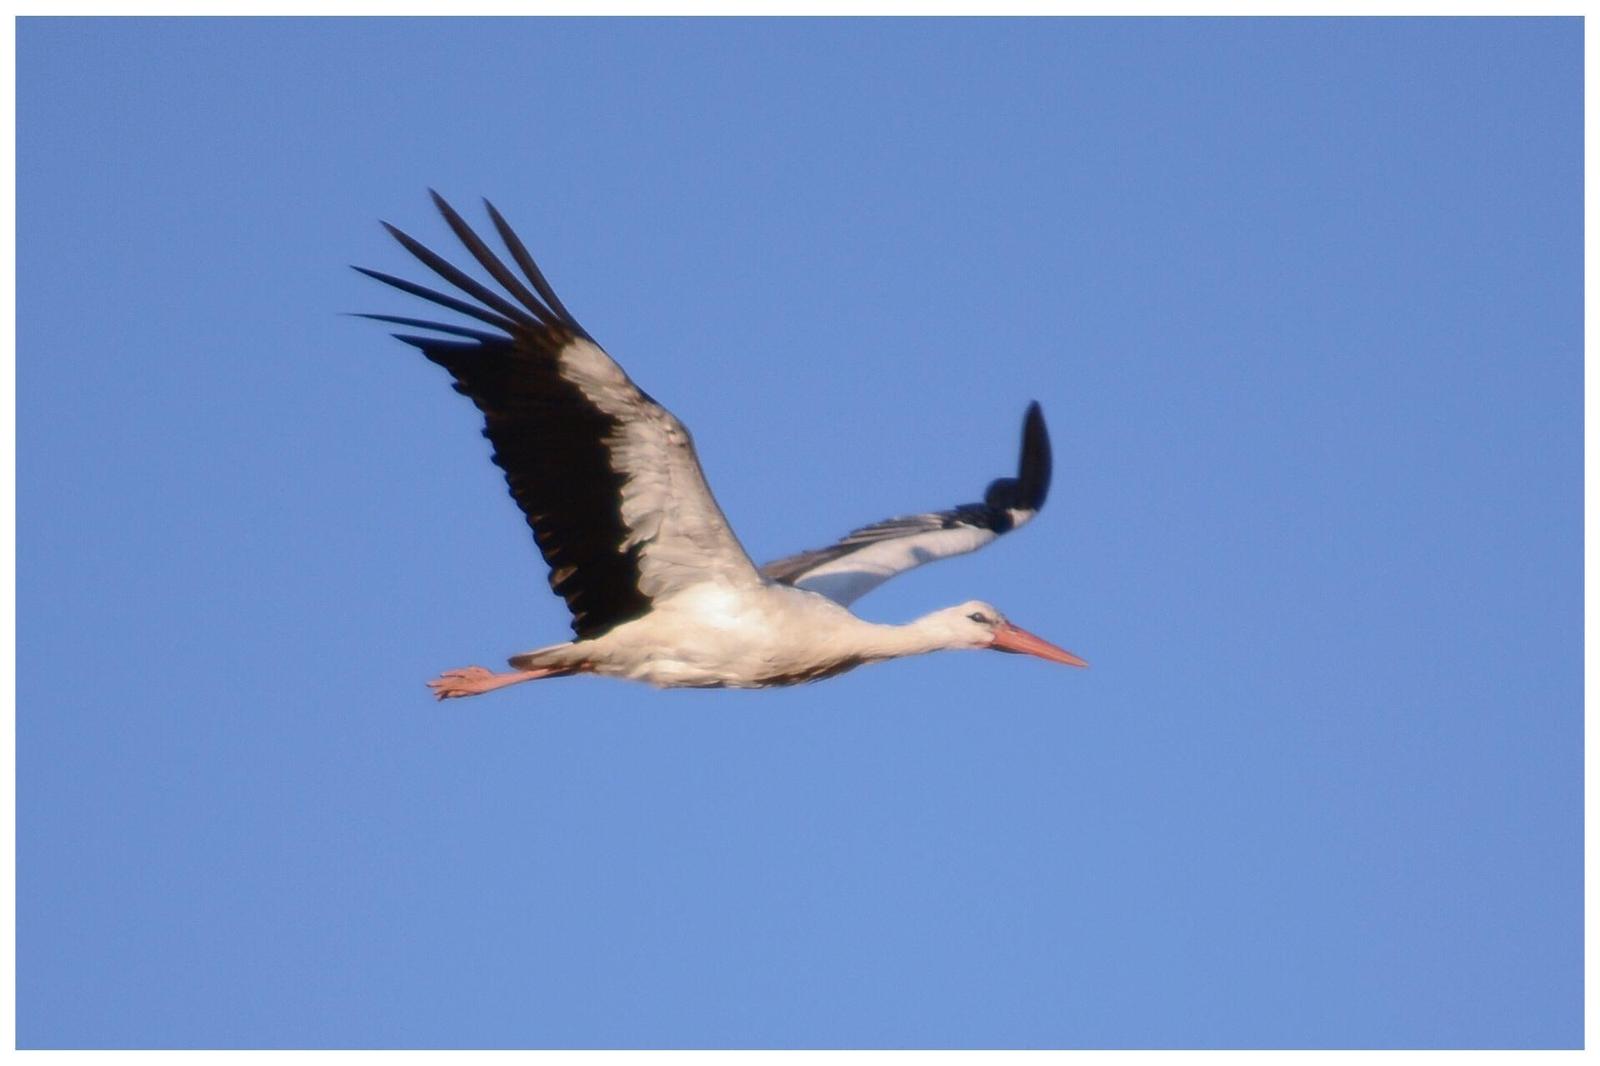 White Stork Photo by Tino Fernandez